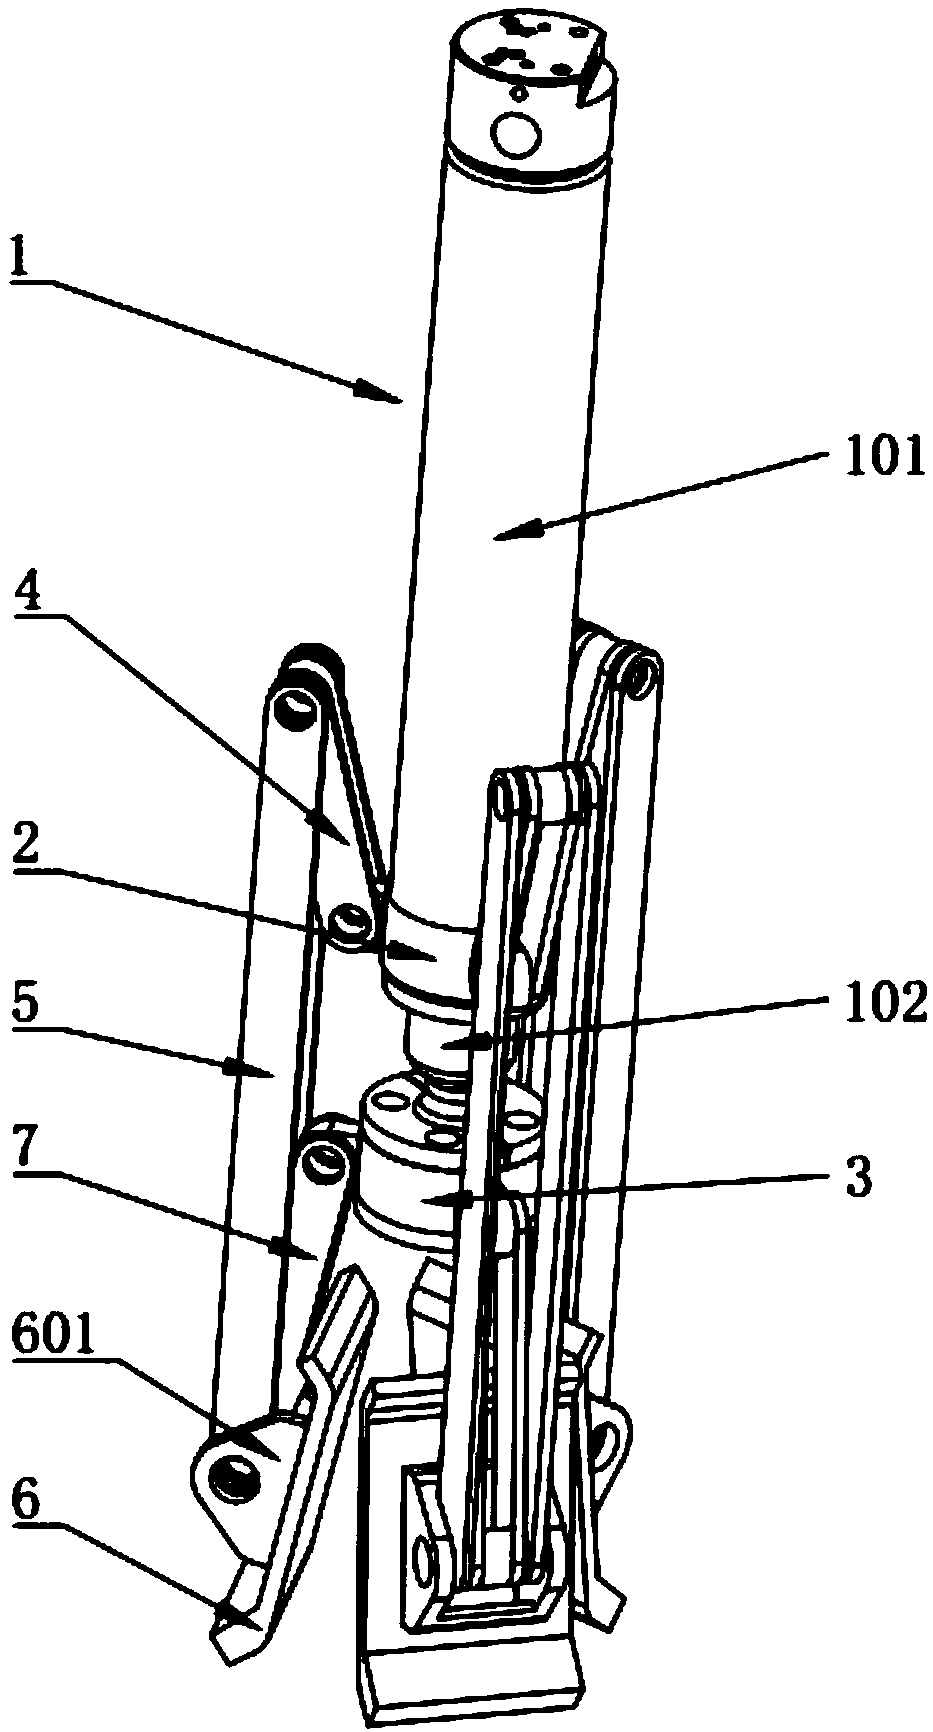 Support mechanism of crane